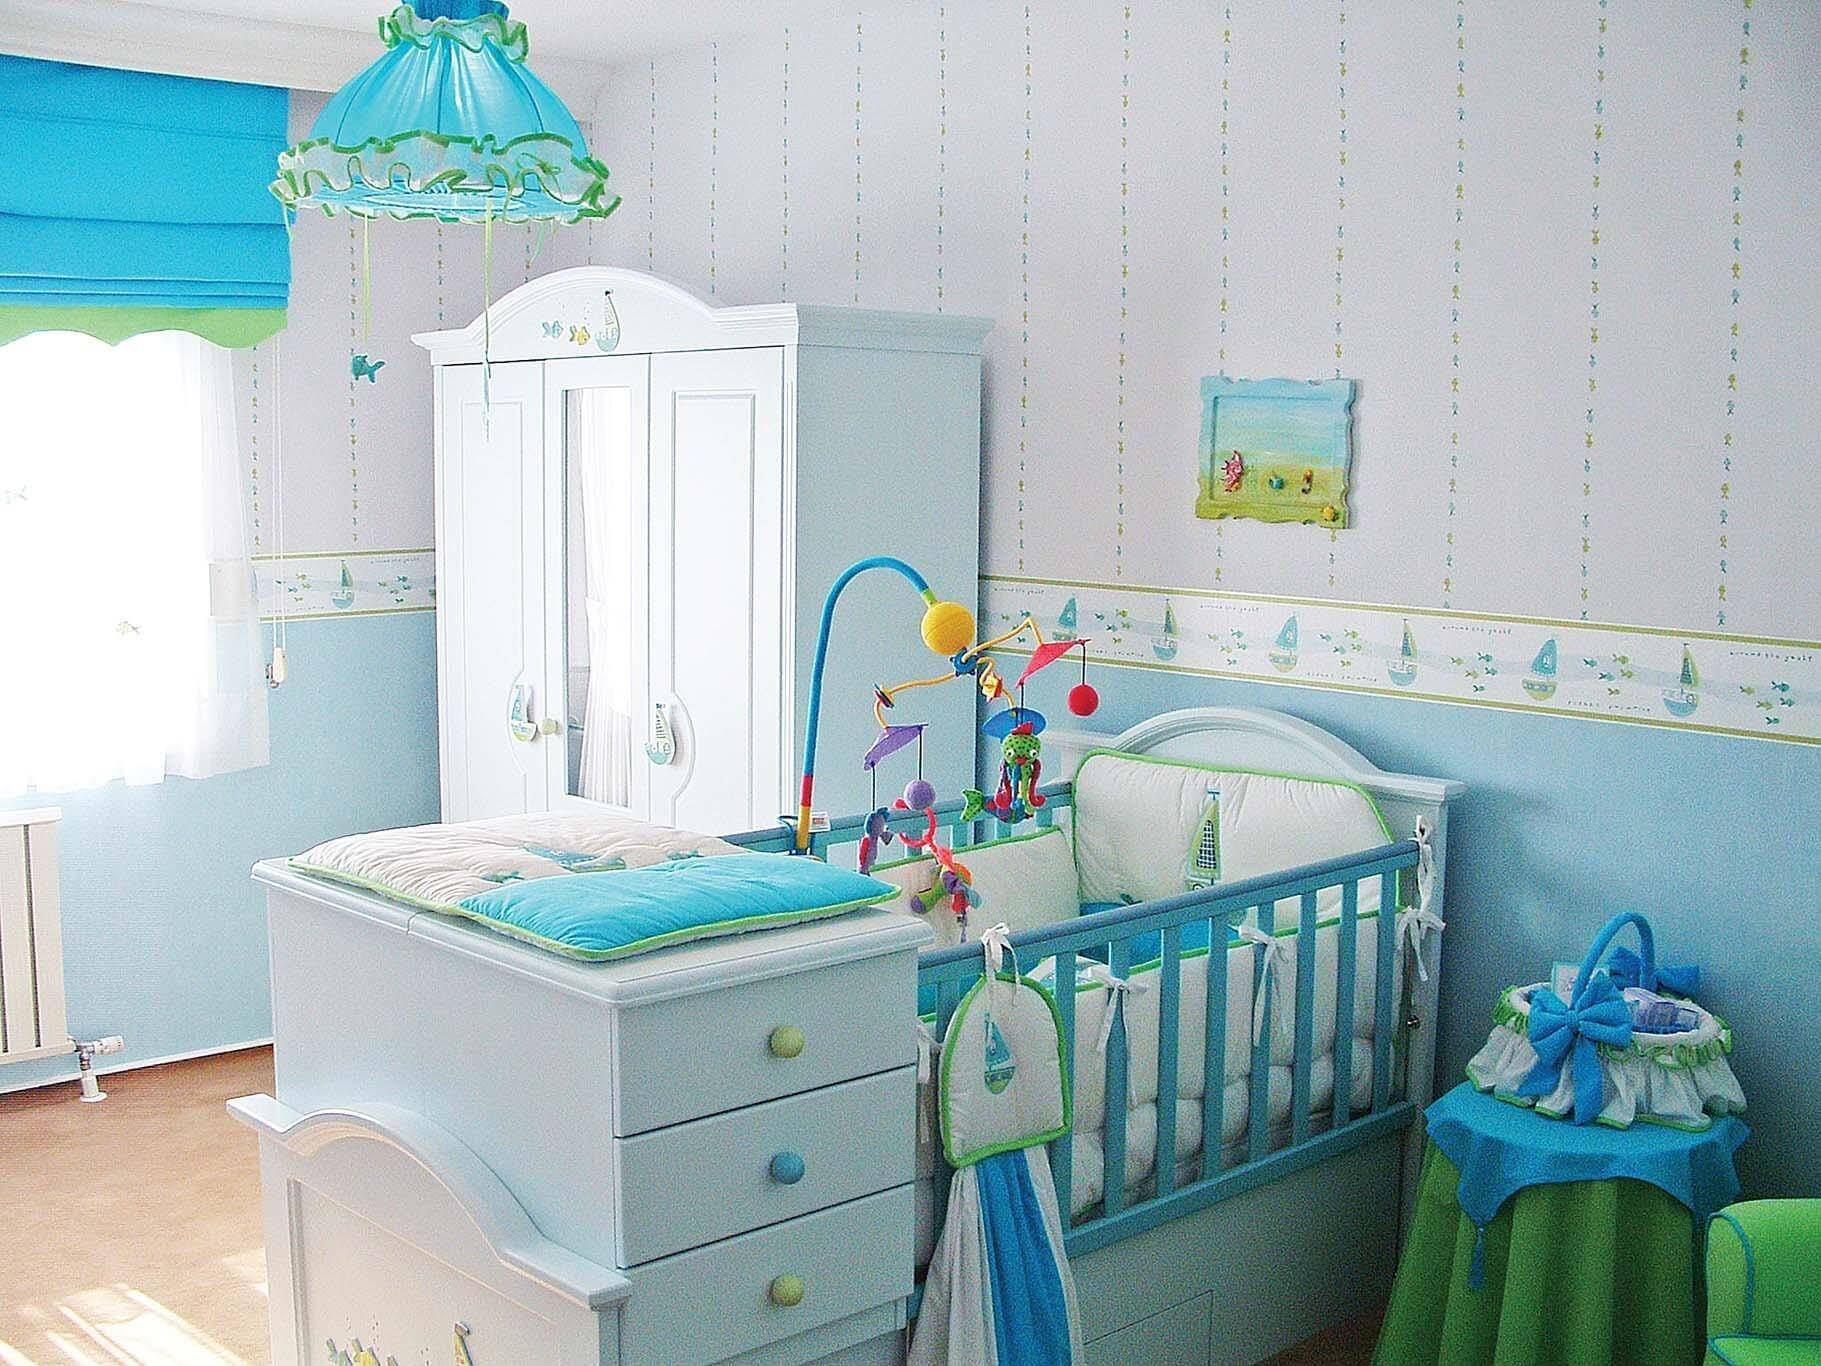 Обзор мебели для новорожденных, важные нюансы, советы по выбору